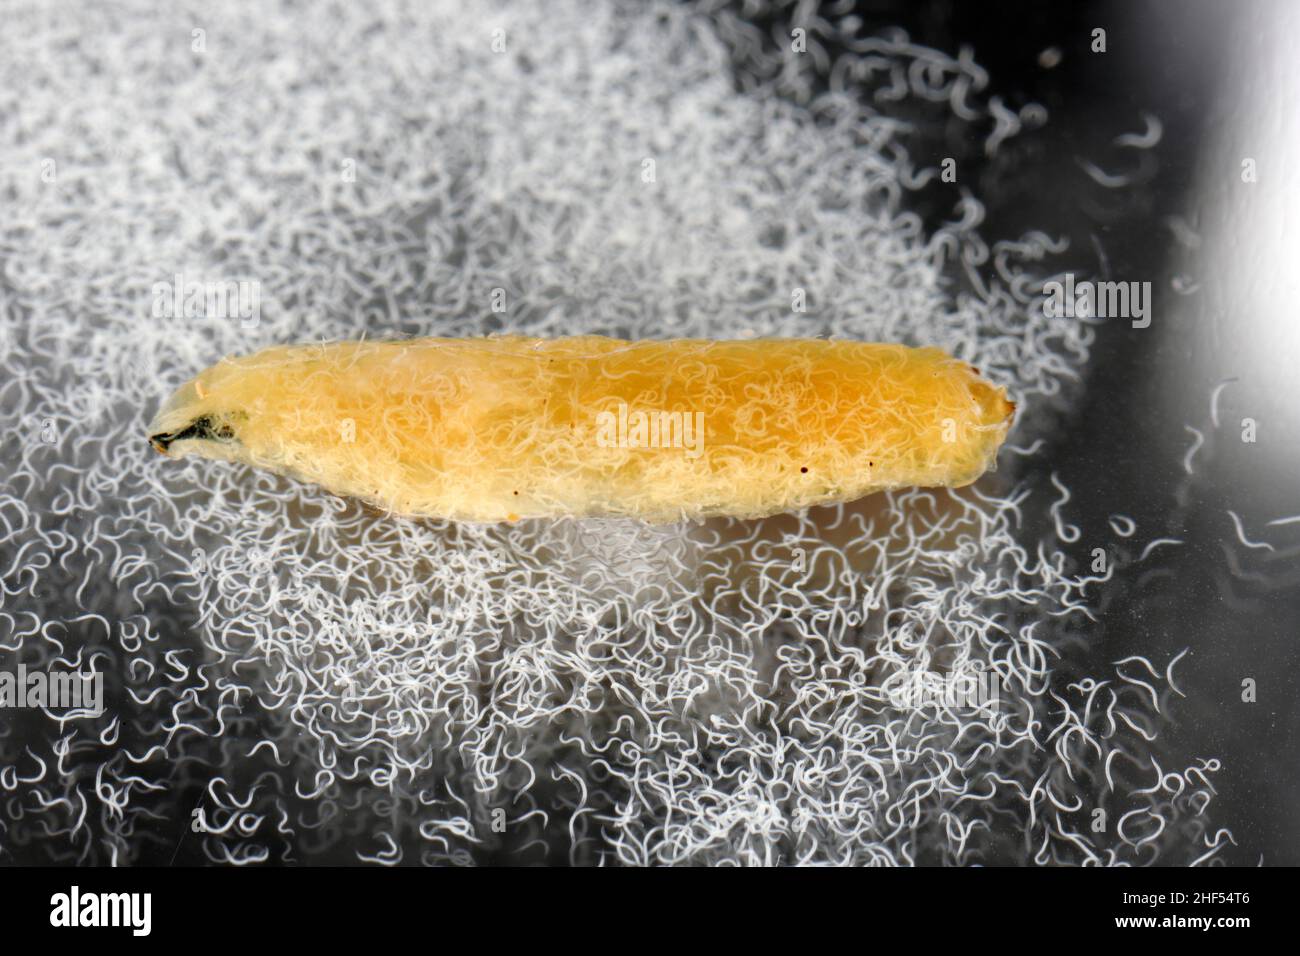 Corpo di larve di cavolo riempito con nematodi parassiti entomopatogeni -Steinernema sp. Anche i nematodi galleggiavano nell'acqua. Foto Stock